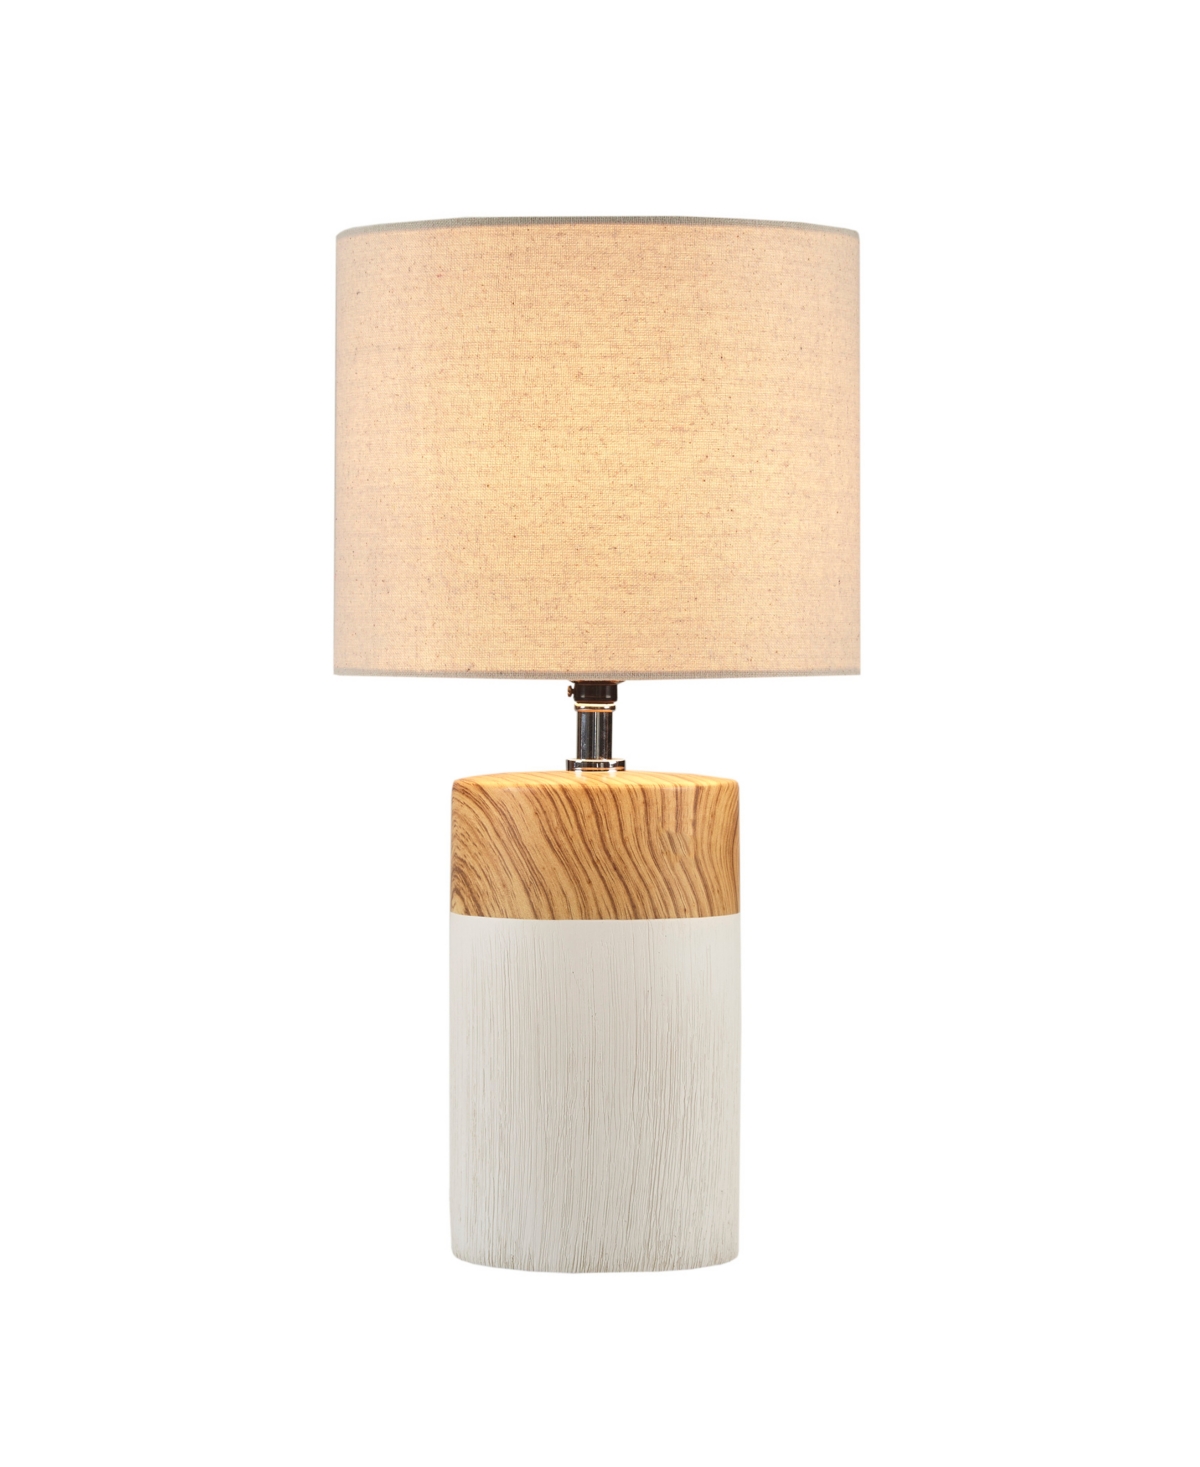 510 Design Nicolo Table Lamp